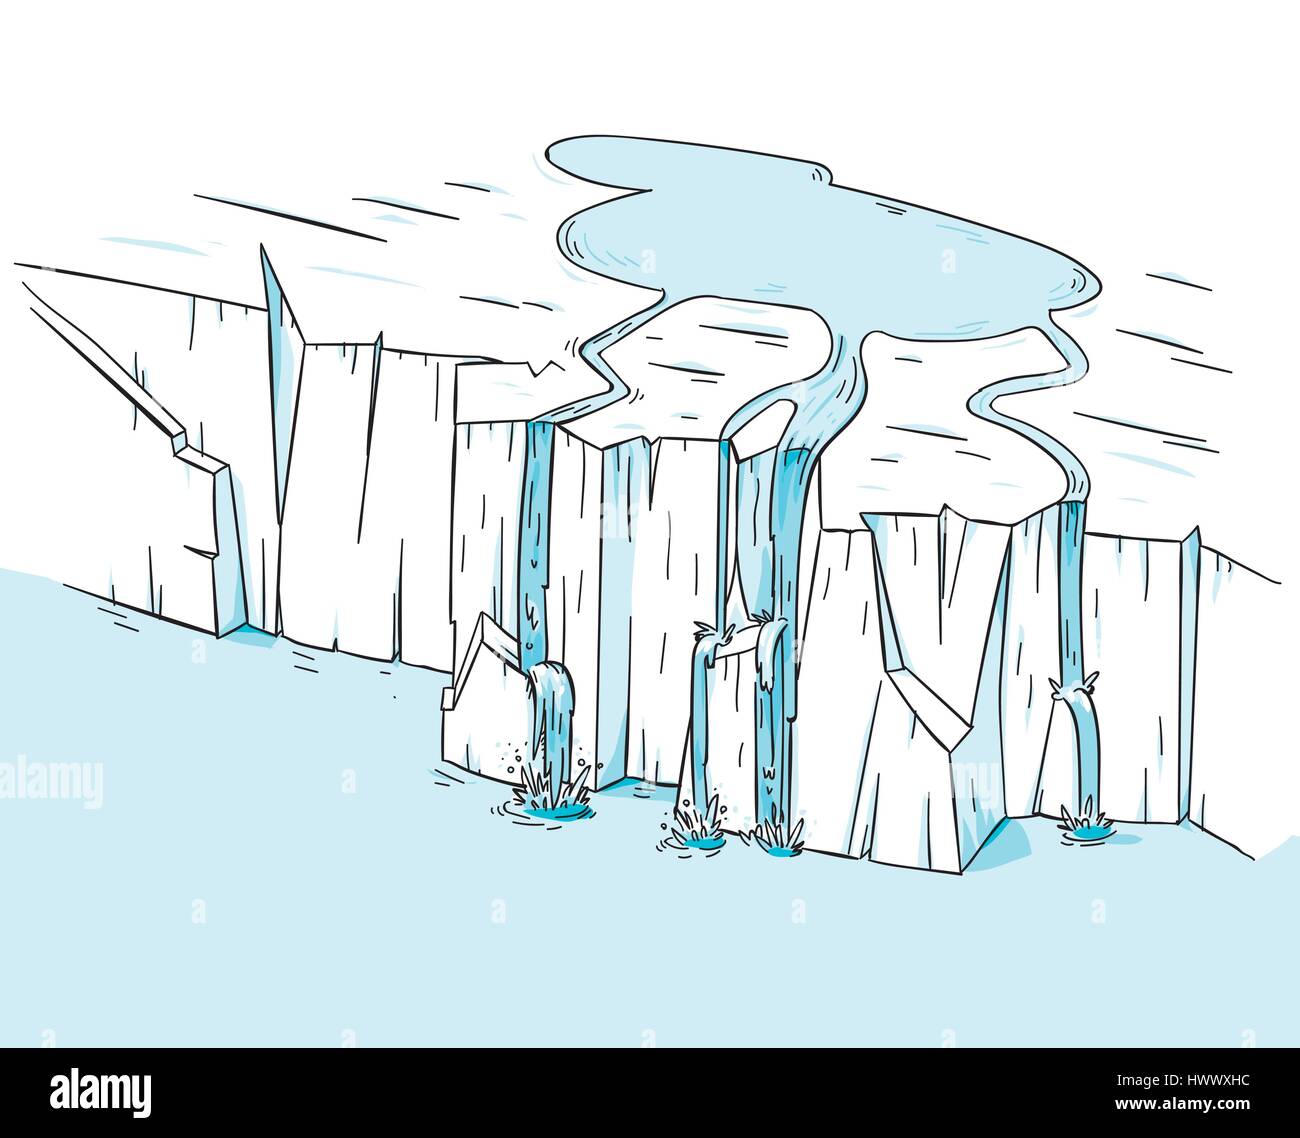 Una piscina di acqua fresca si riversa fuori del bordo di una fusione icecap polare ghiacciaio, nell'oceano. Illustrazione Vettoriale